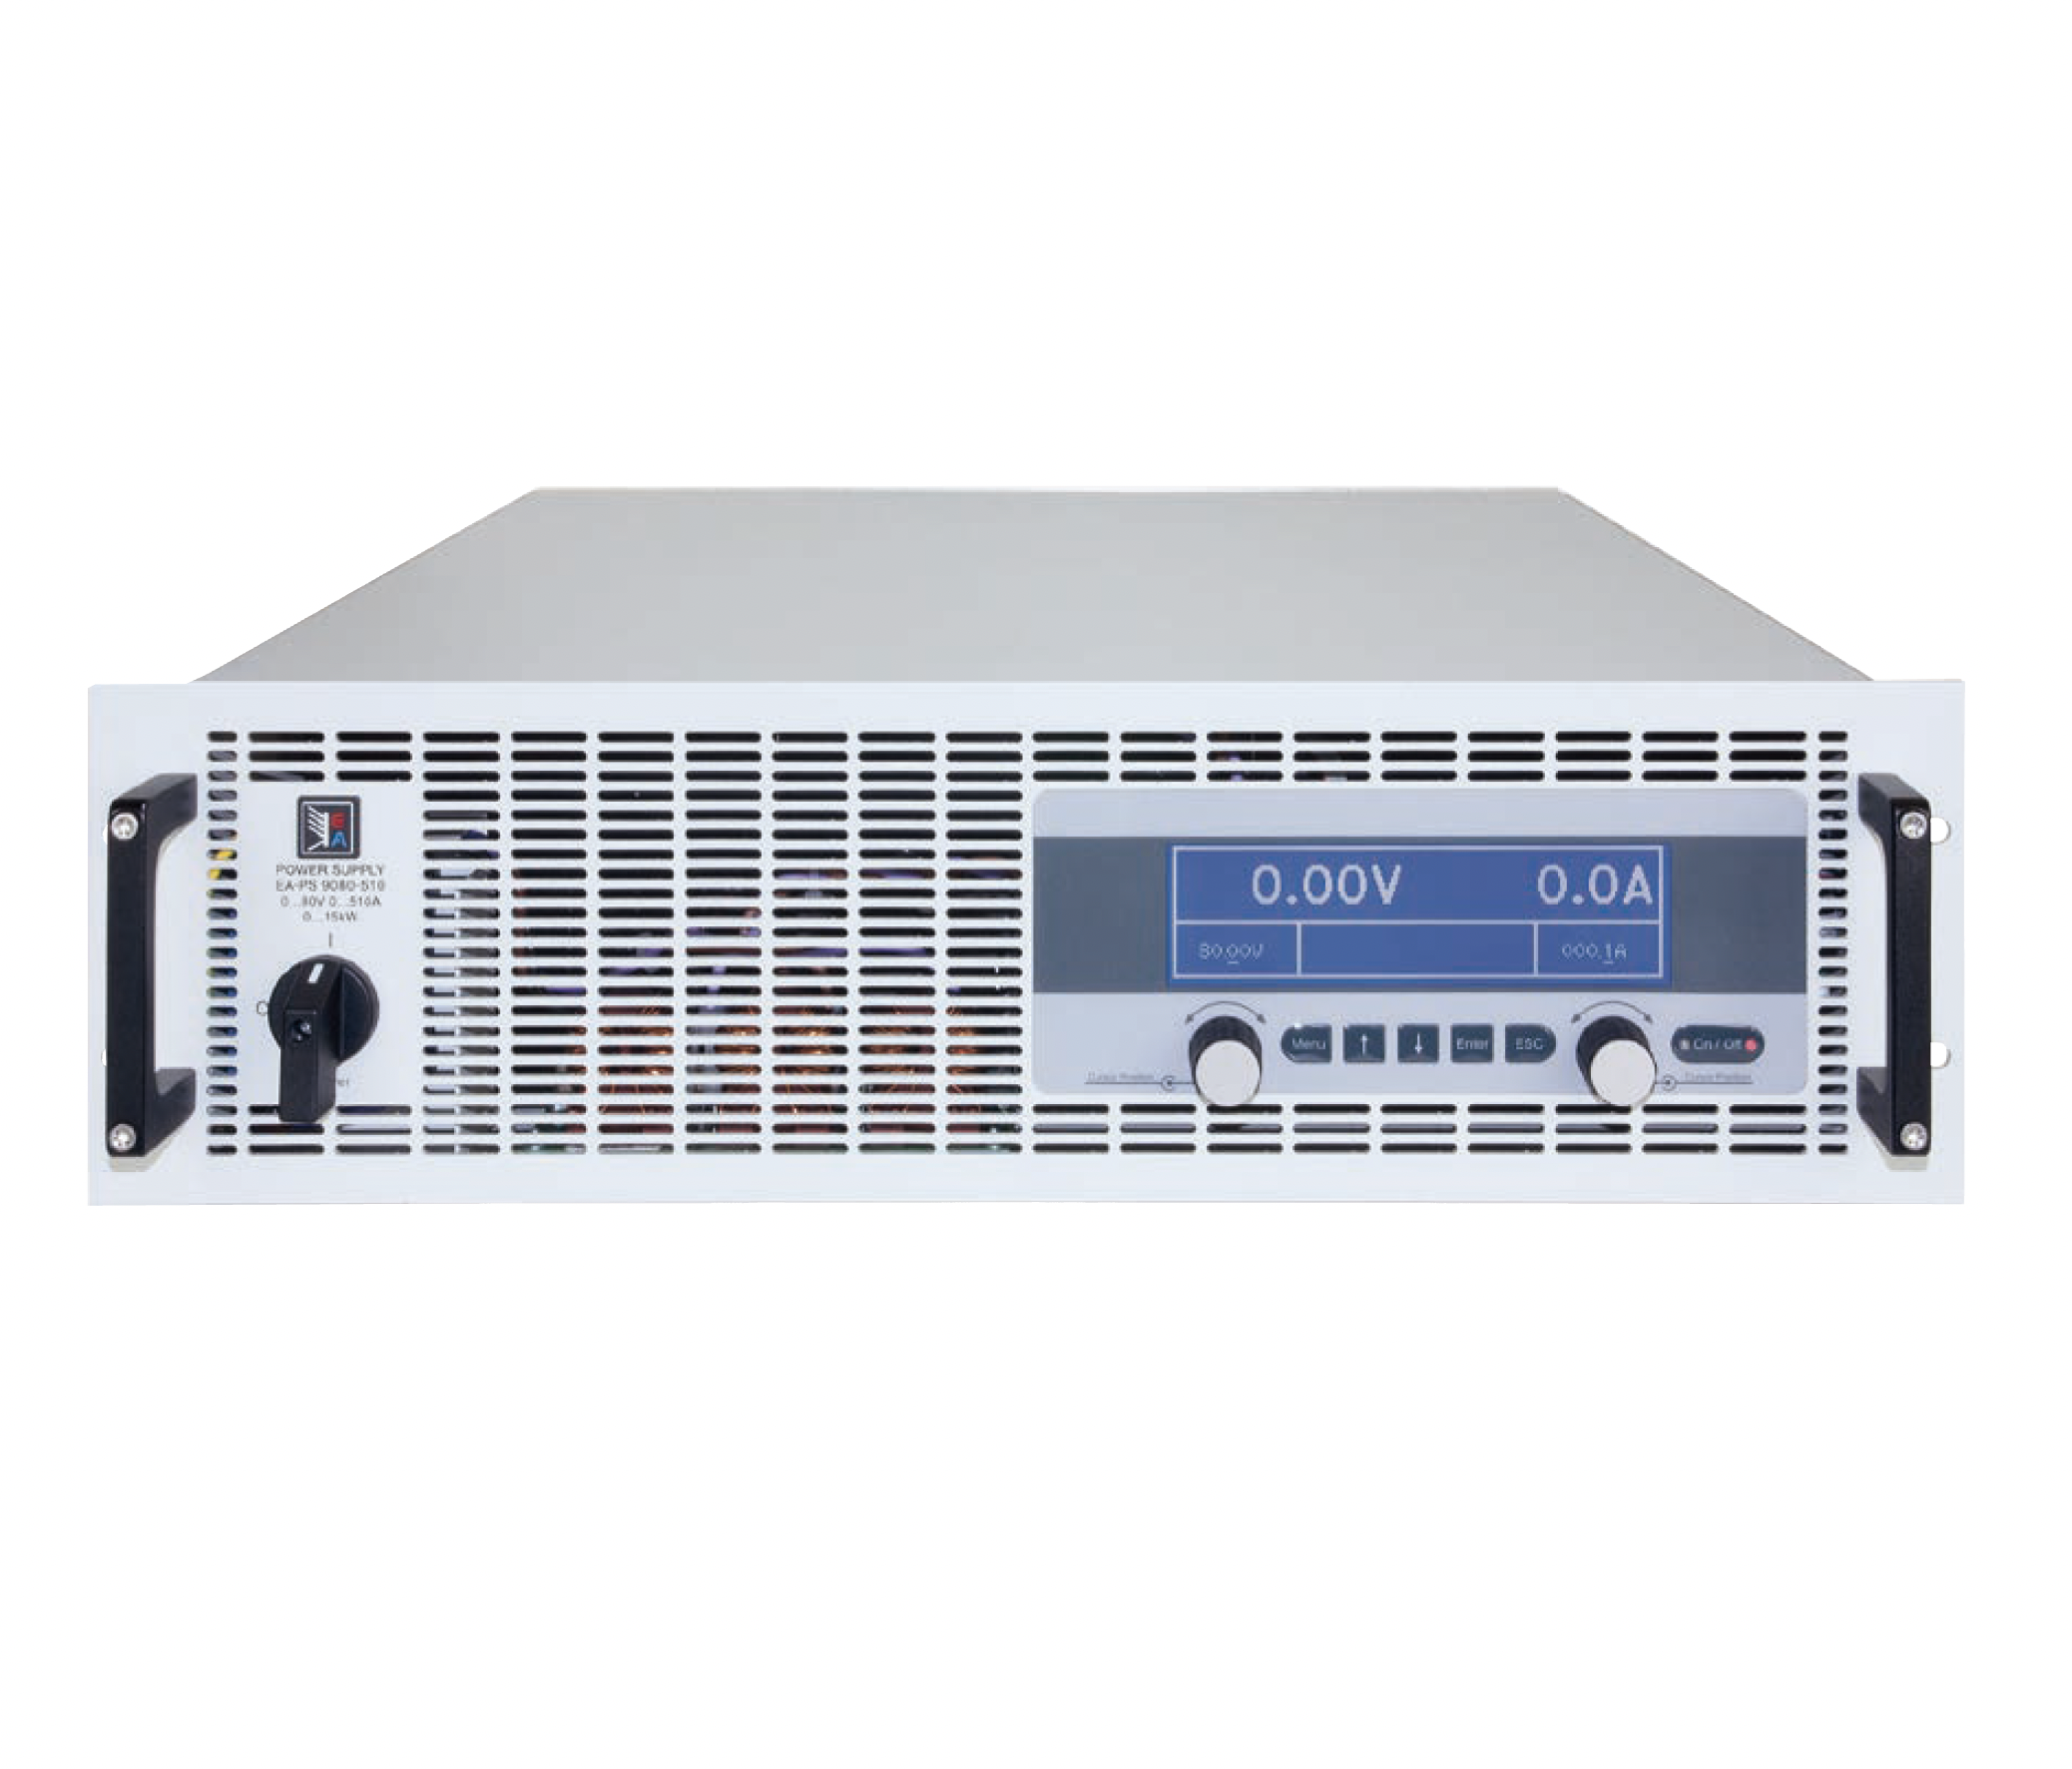 Программируемые источники питания
постоянного тока
 EA Elektro-Automatik серии PS 9000
 с максимальной выходной мощностью
от 1,5 кВт до 15 кВт